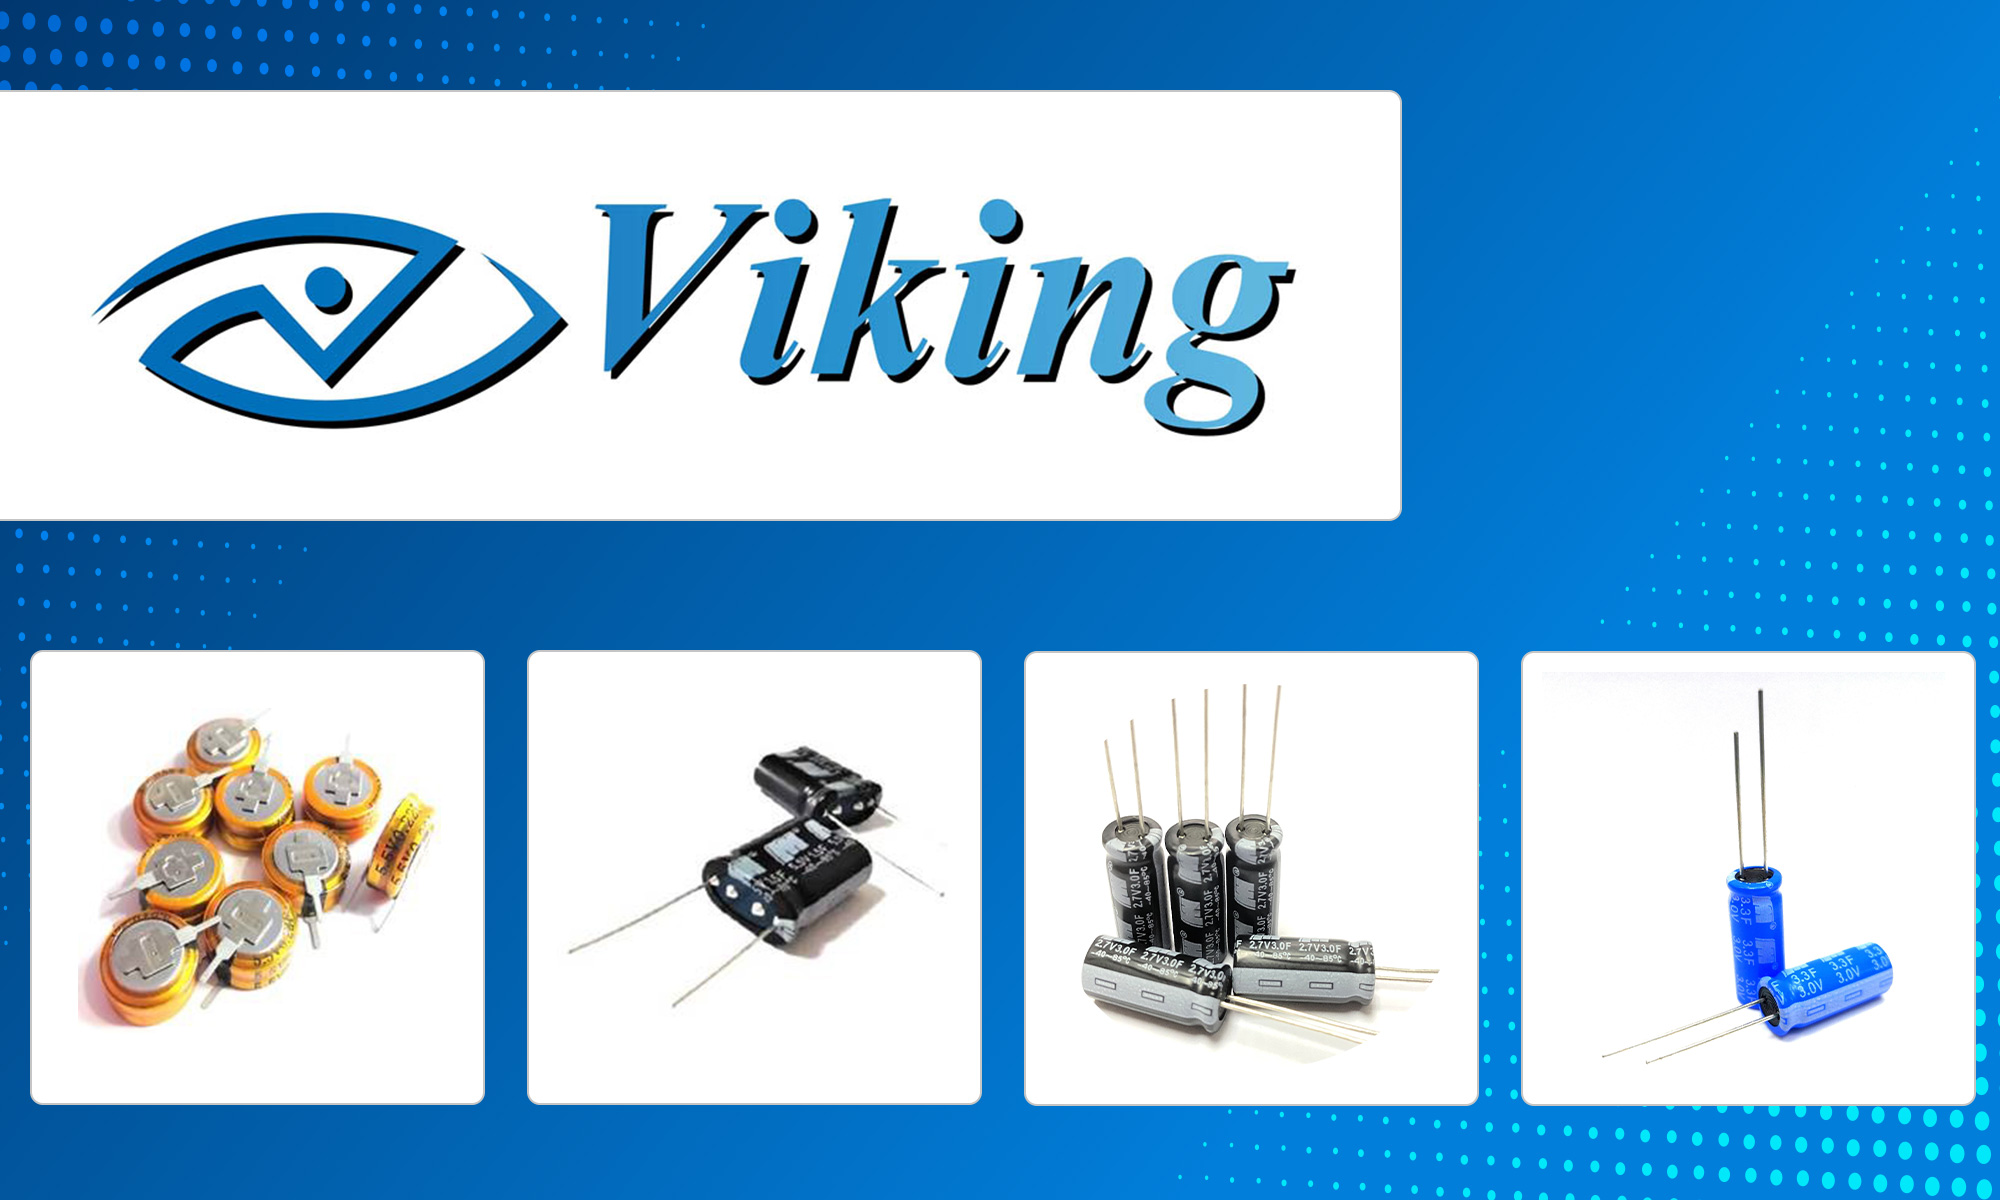 viking supercapacitors